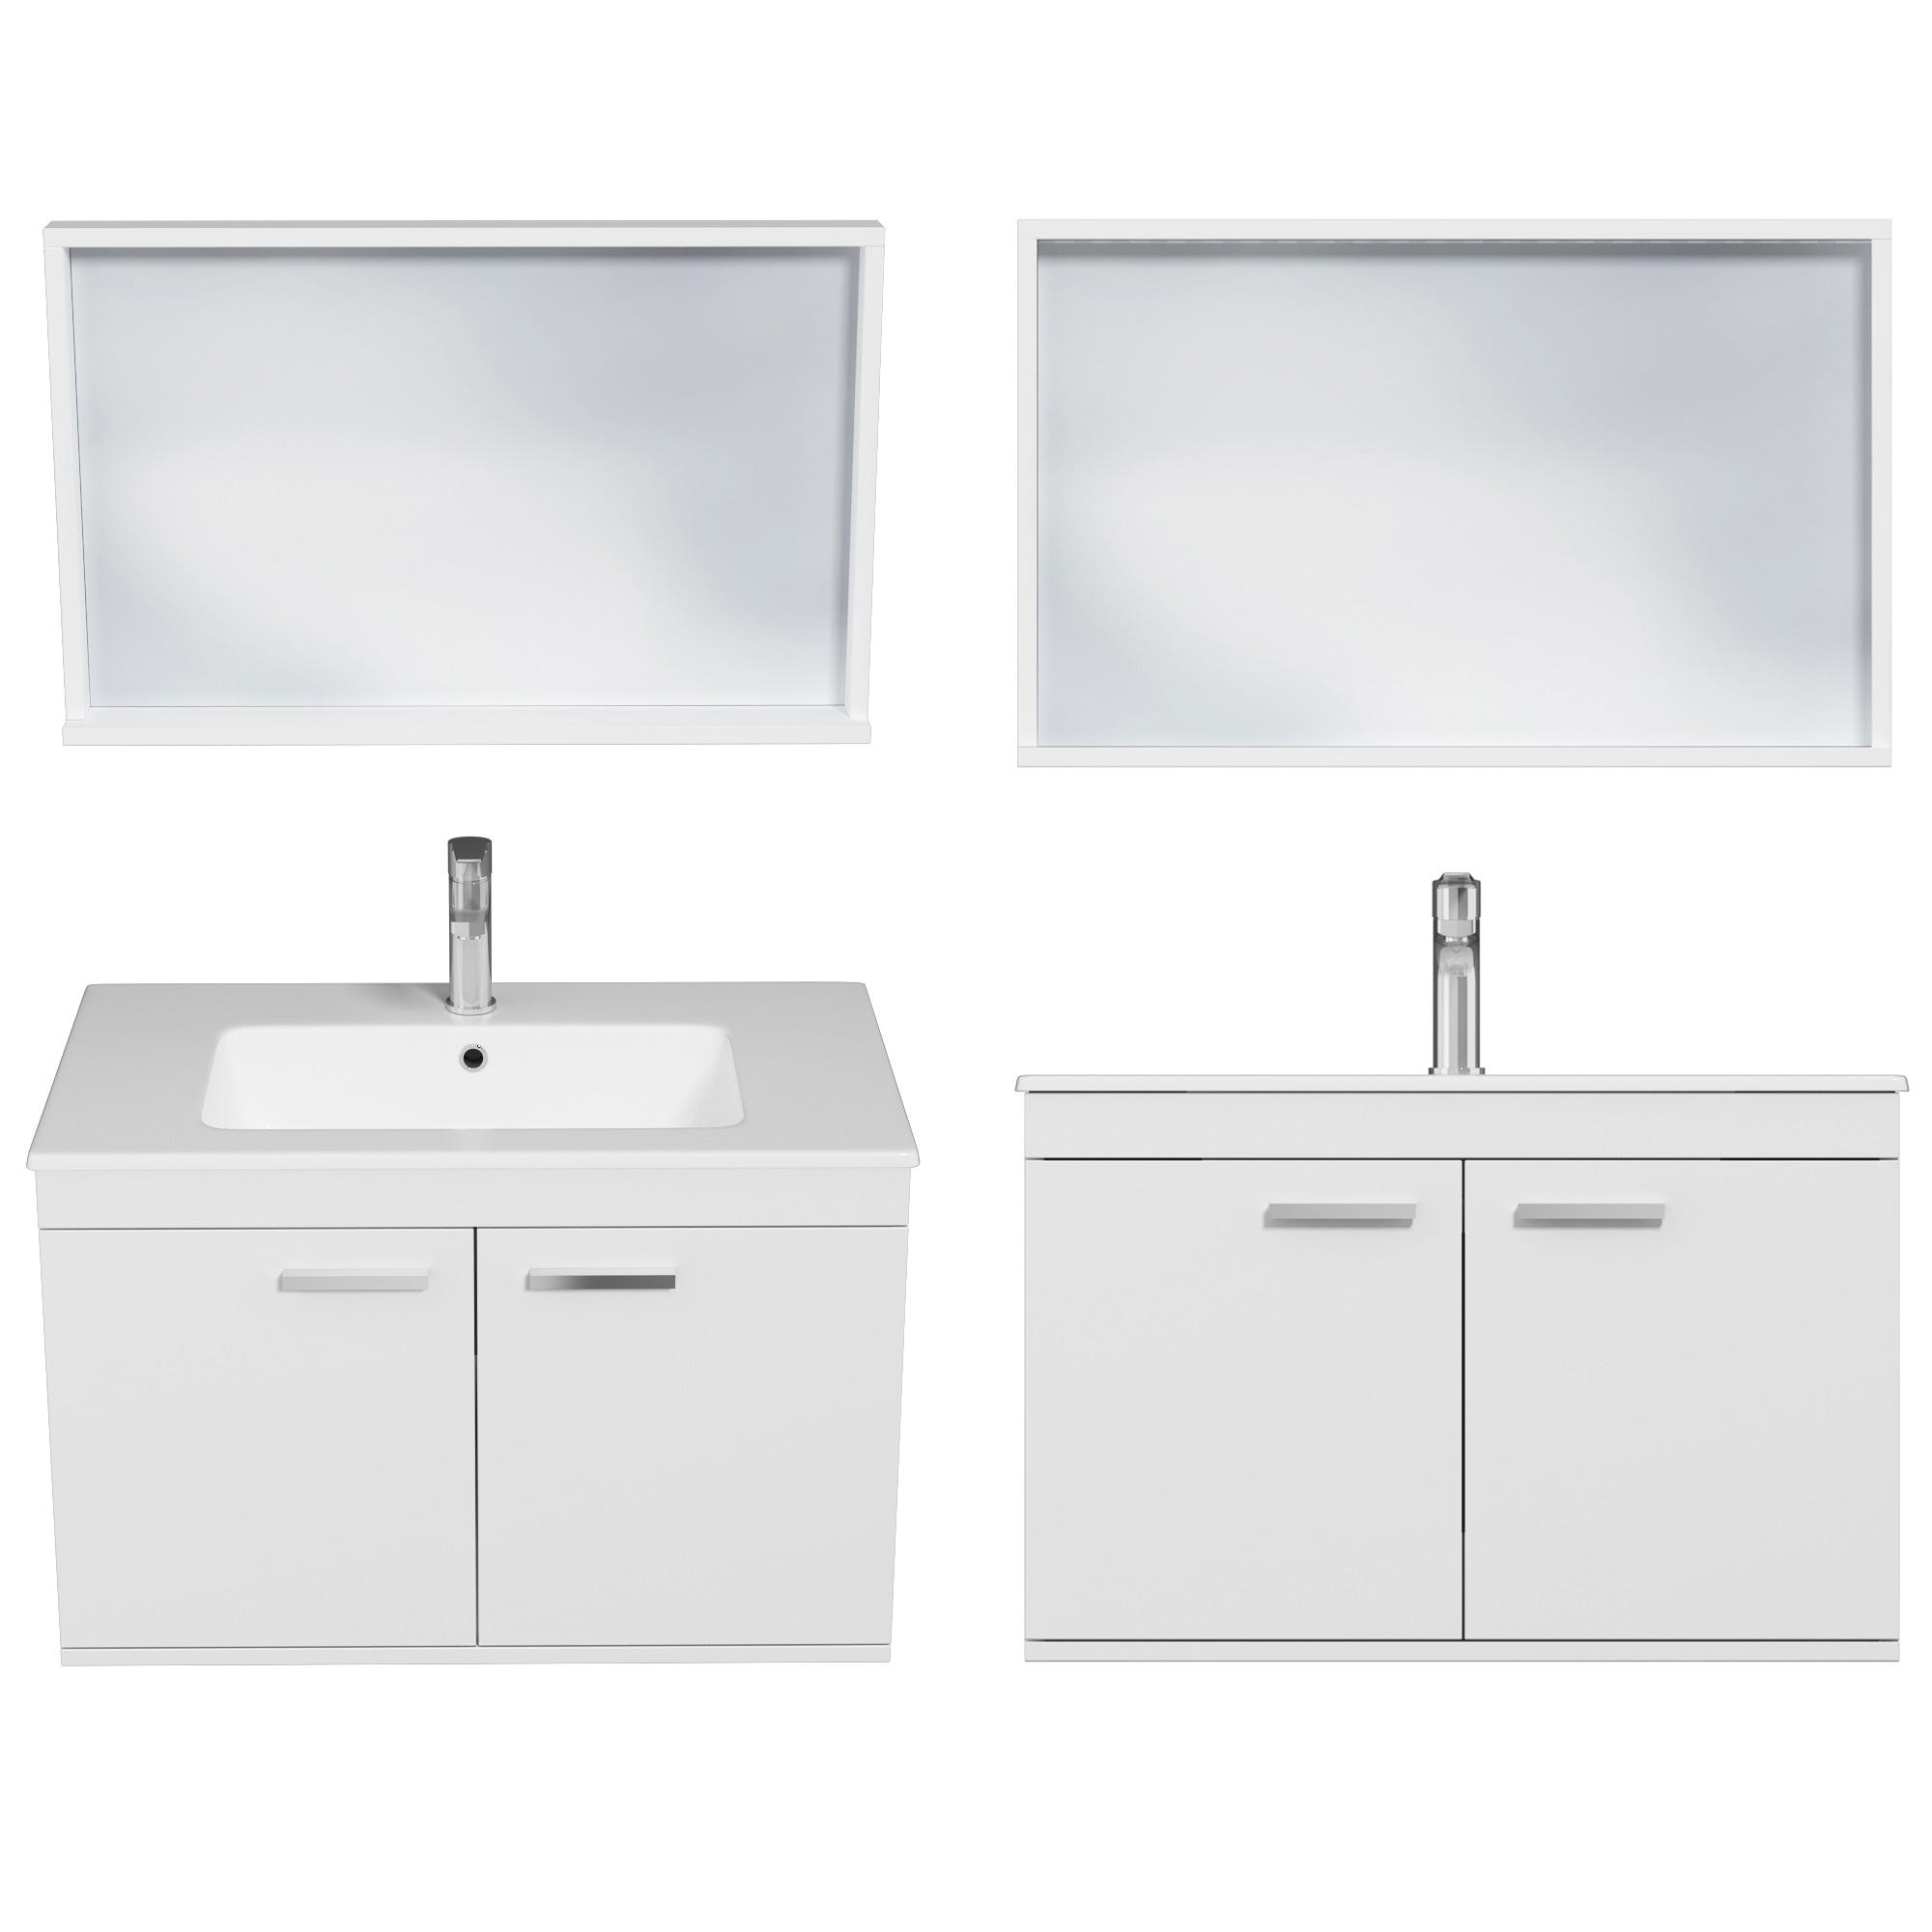 RUBITE Meuble salle de bain simple vasque 2 portes blanc largeur 80 cm + miroir cadre 3